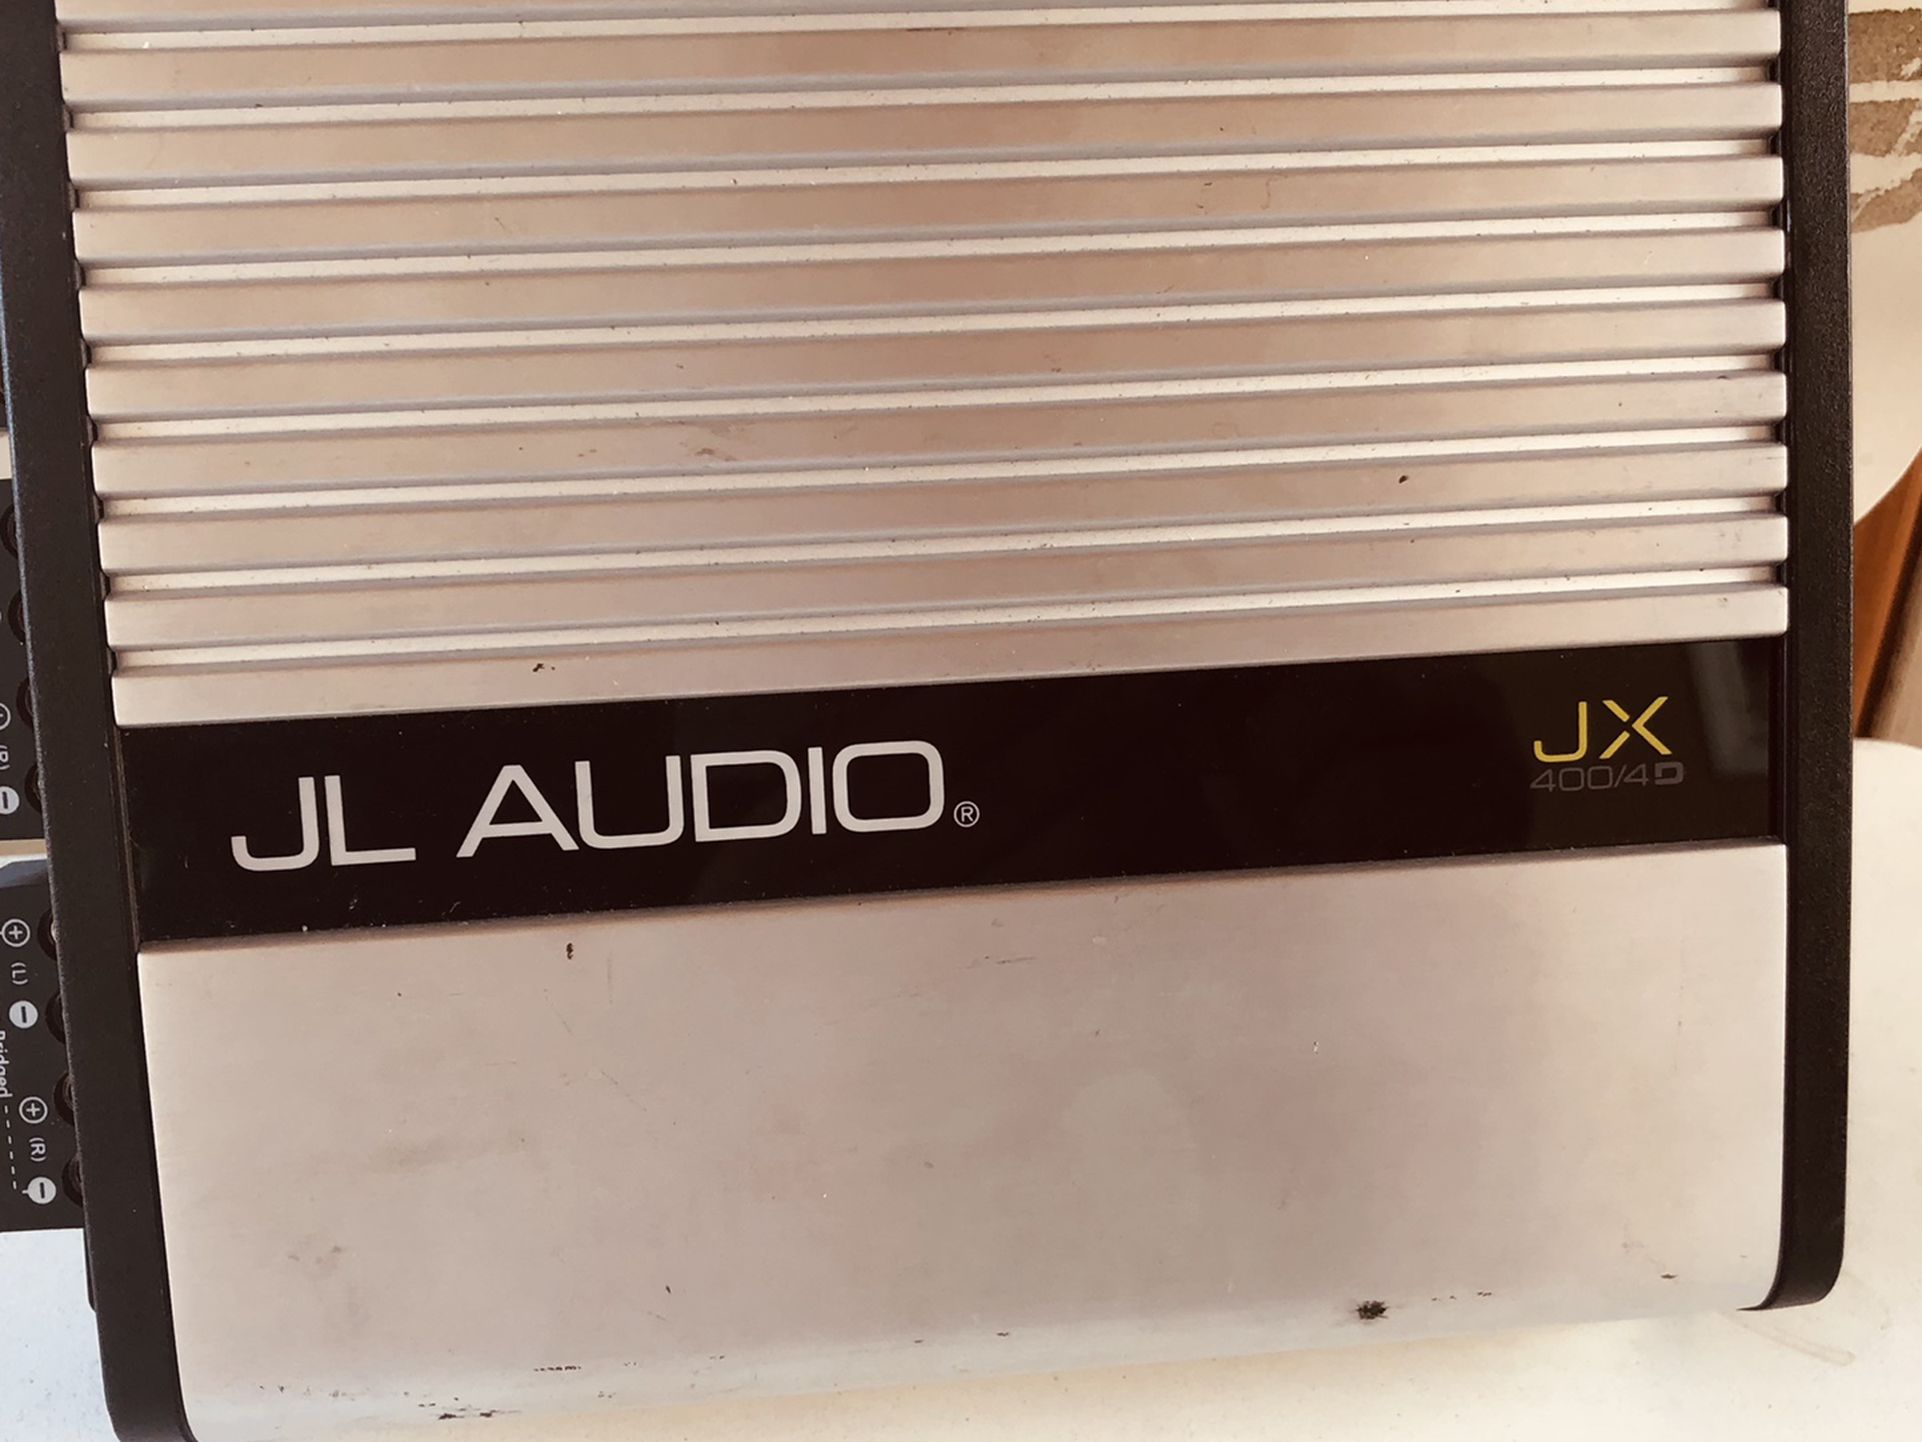 JL Audio JX 400/4D 4 Channel Amplifier